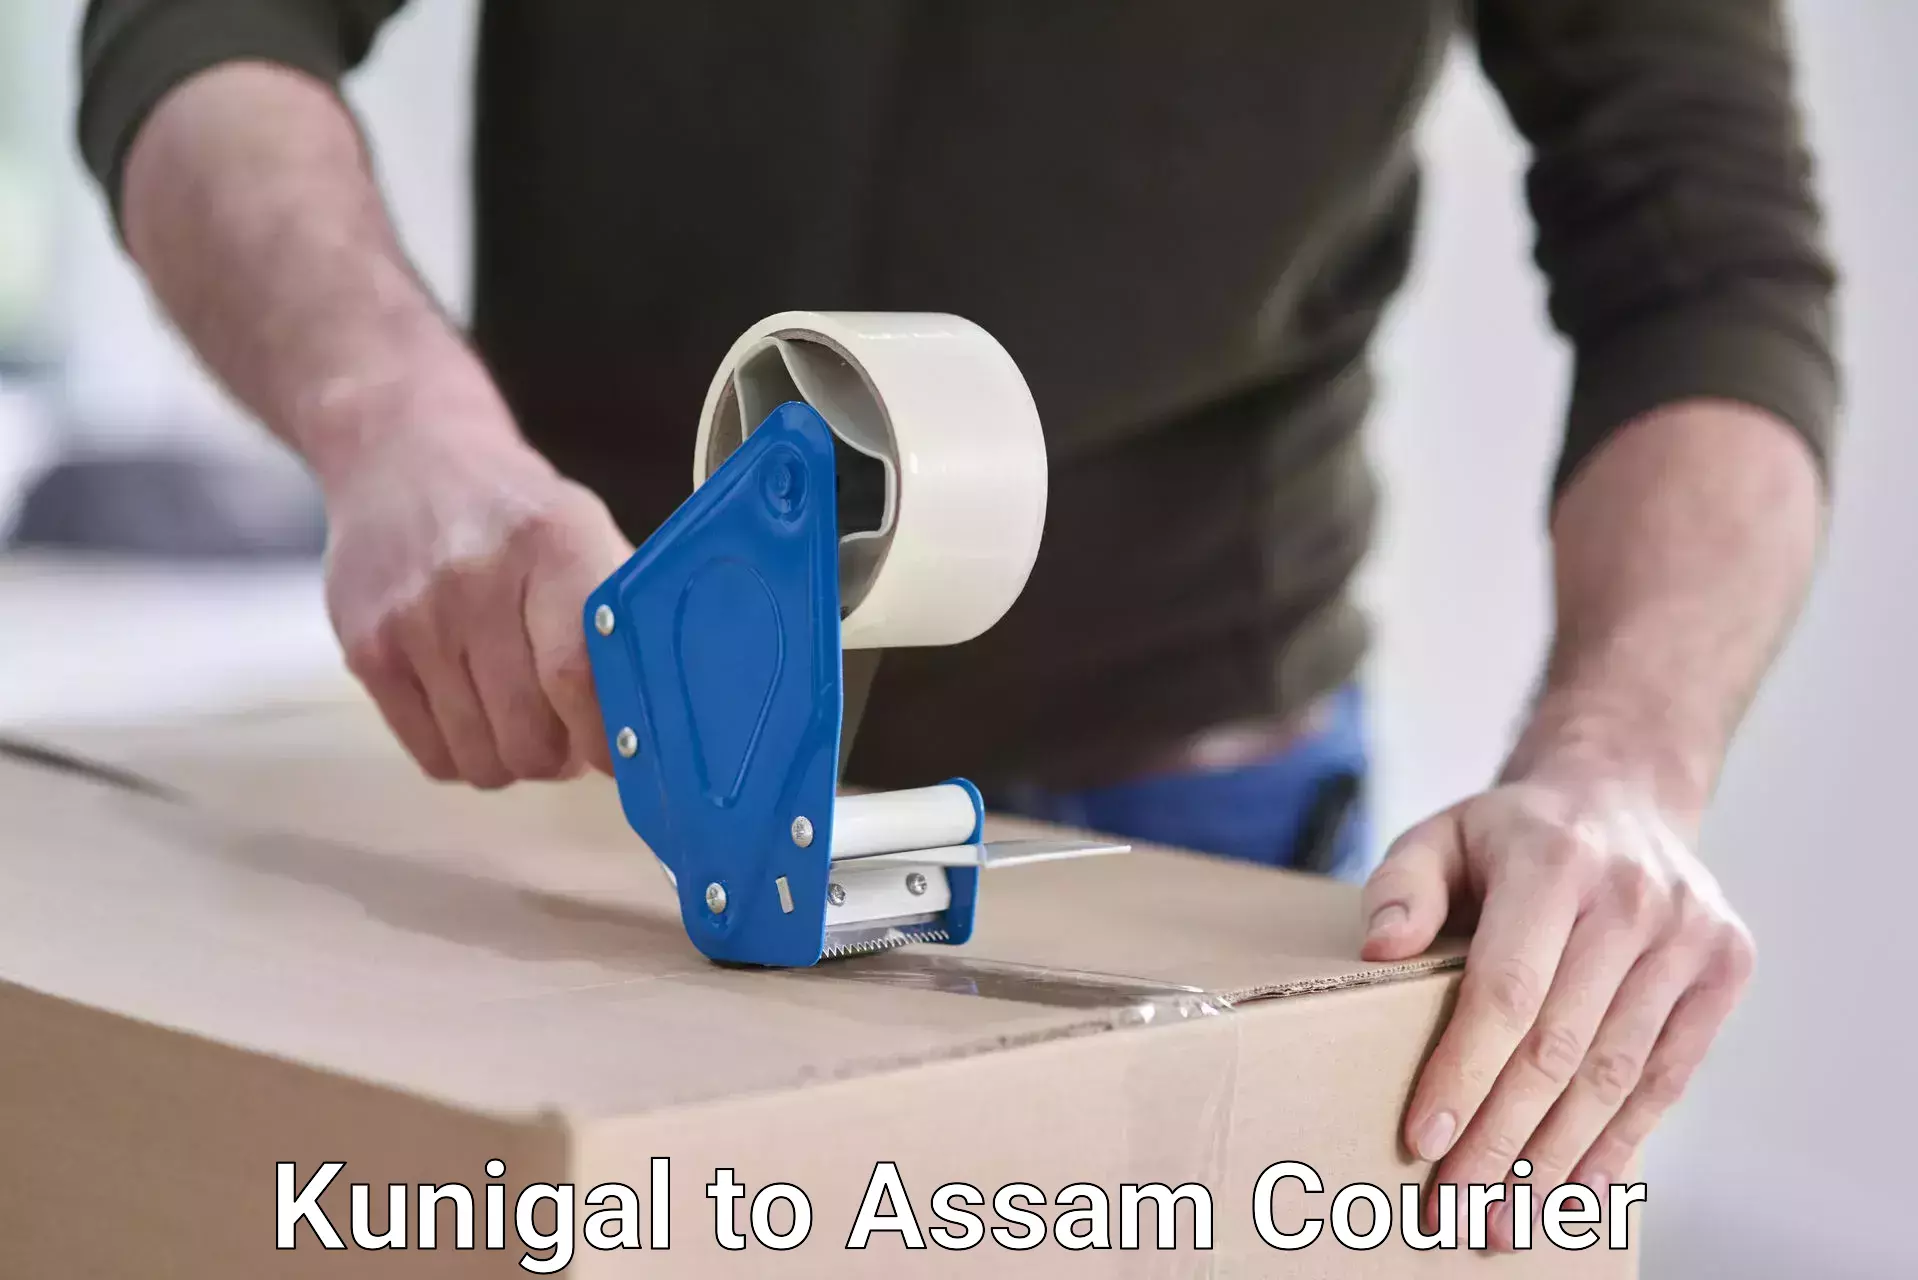 Courier service comparison Kunigal to Assam